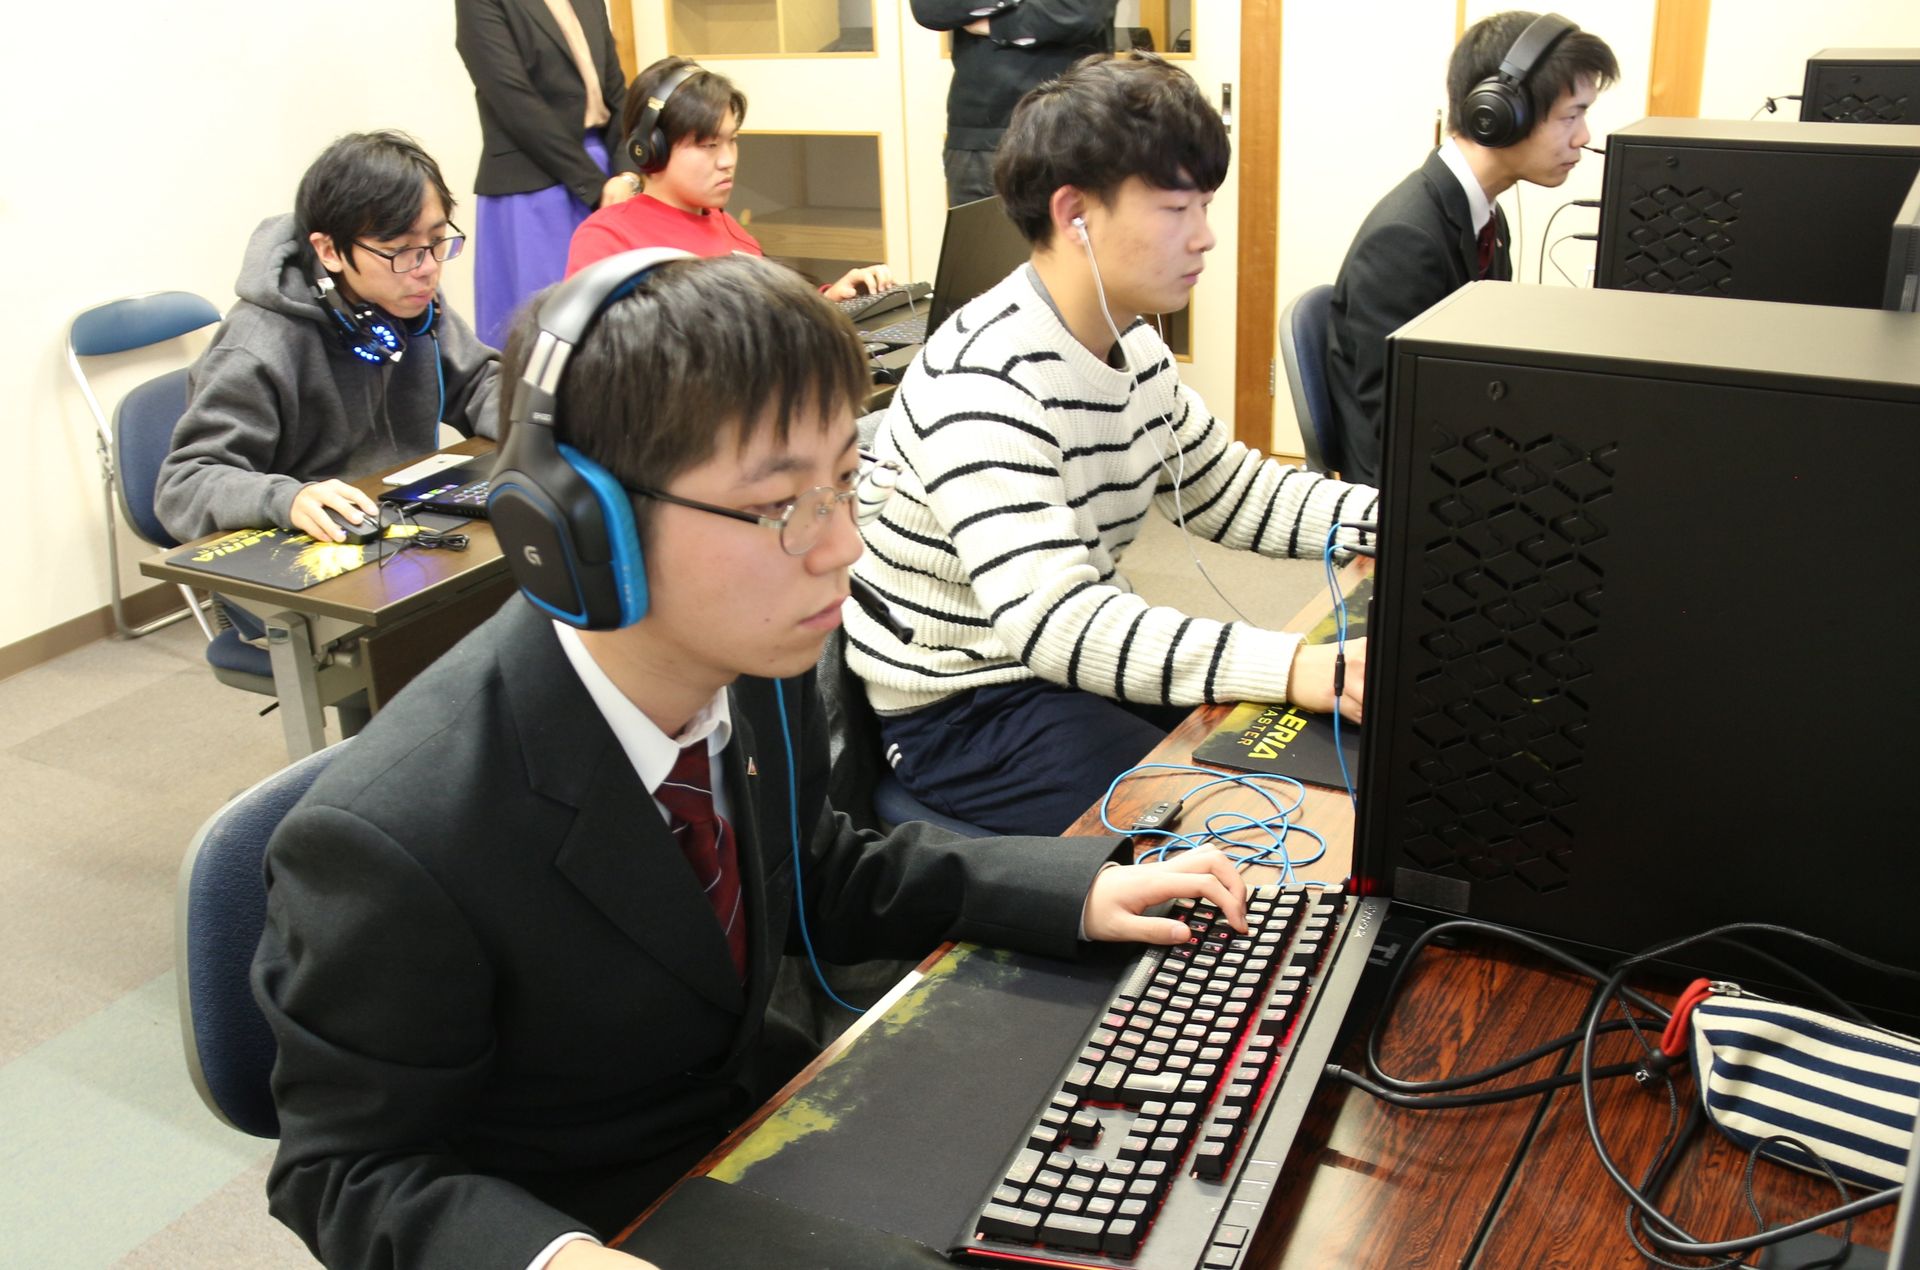 特別企画 Eスポーツを 学校おこし に活用する岡山共生高校訪問レポート Game Watch